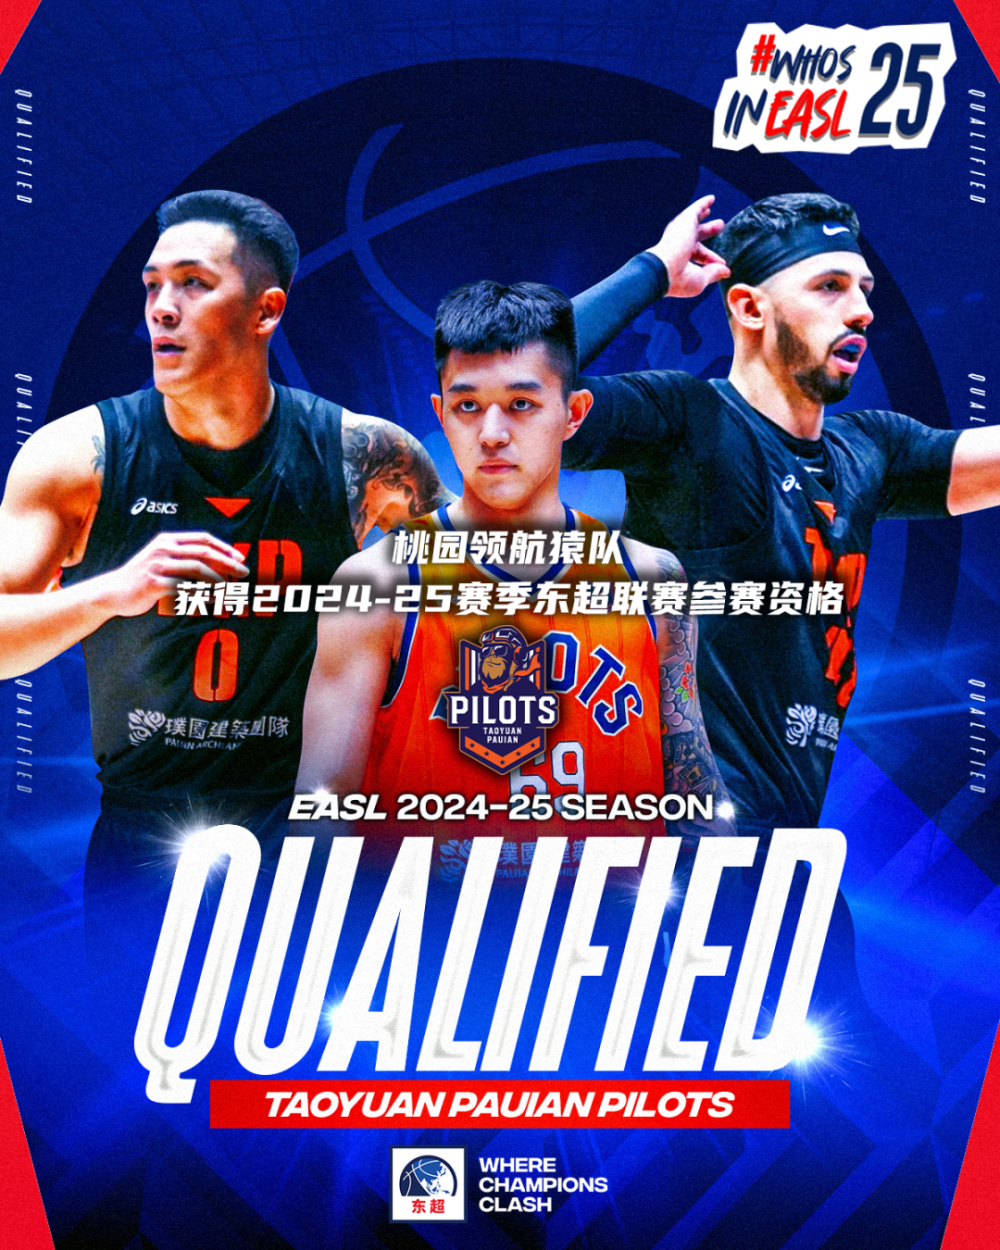 上海kings篮球队员名单图片